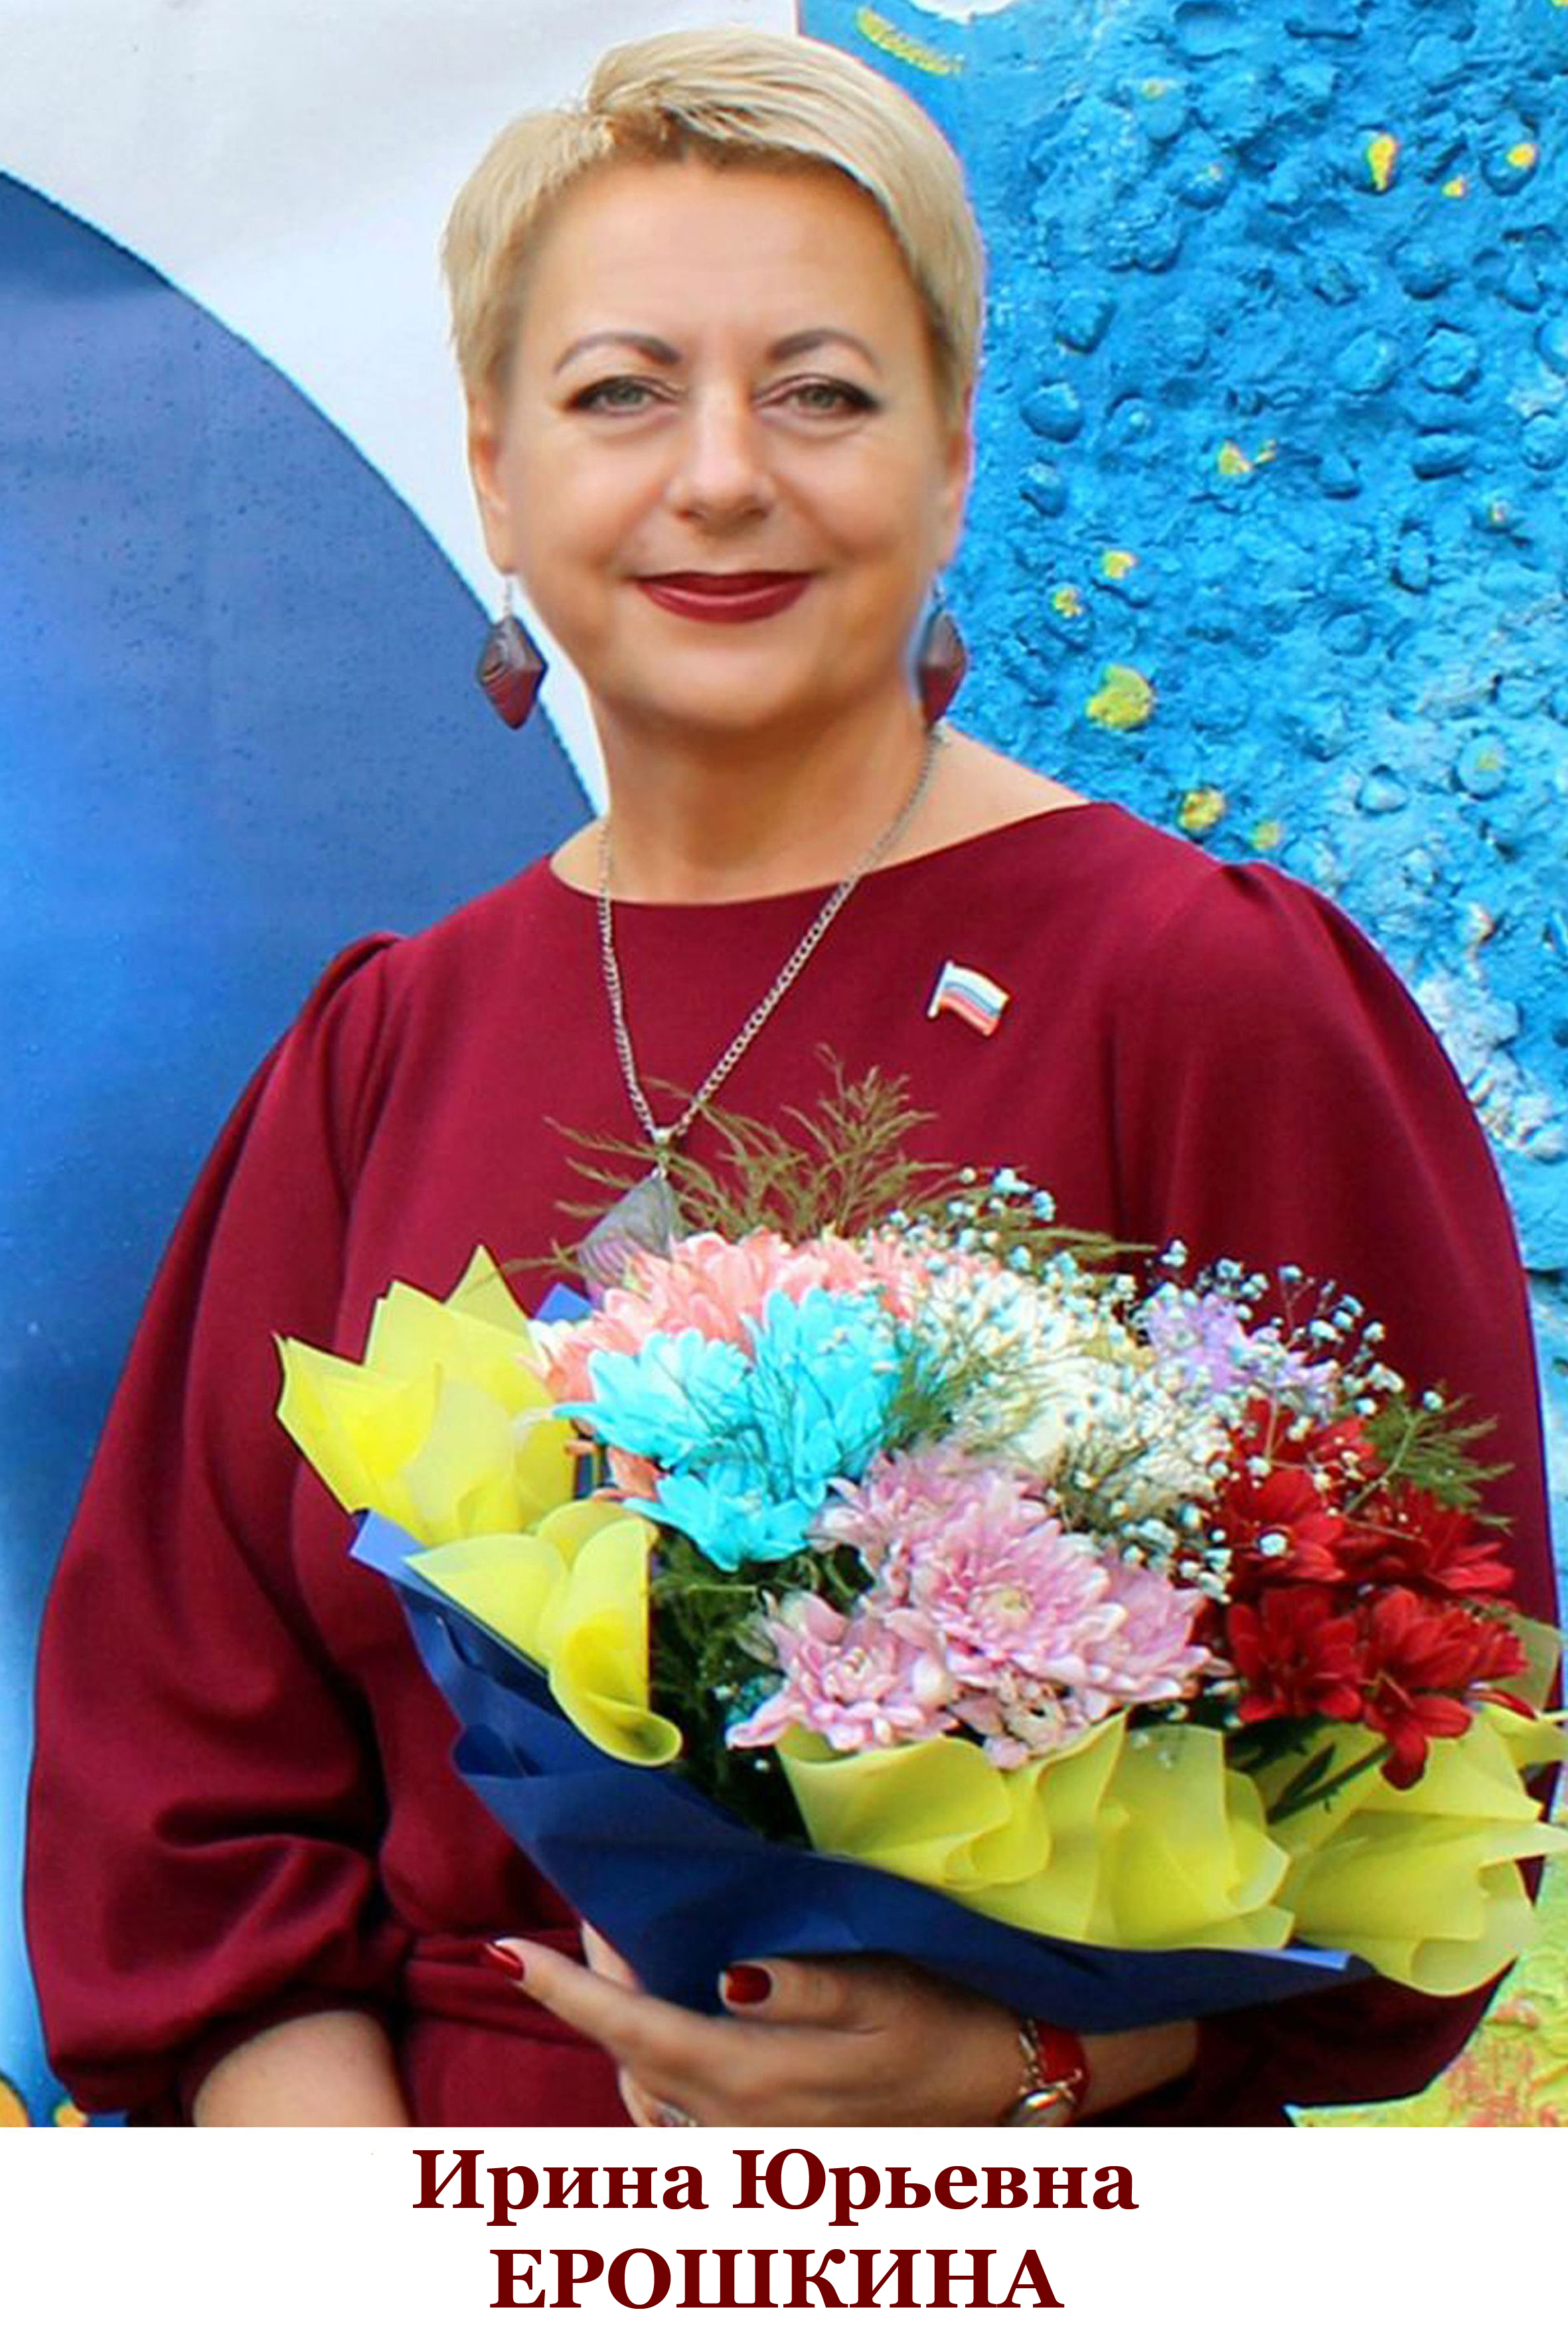 Ерошкина Ирина Юрьевна